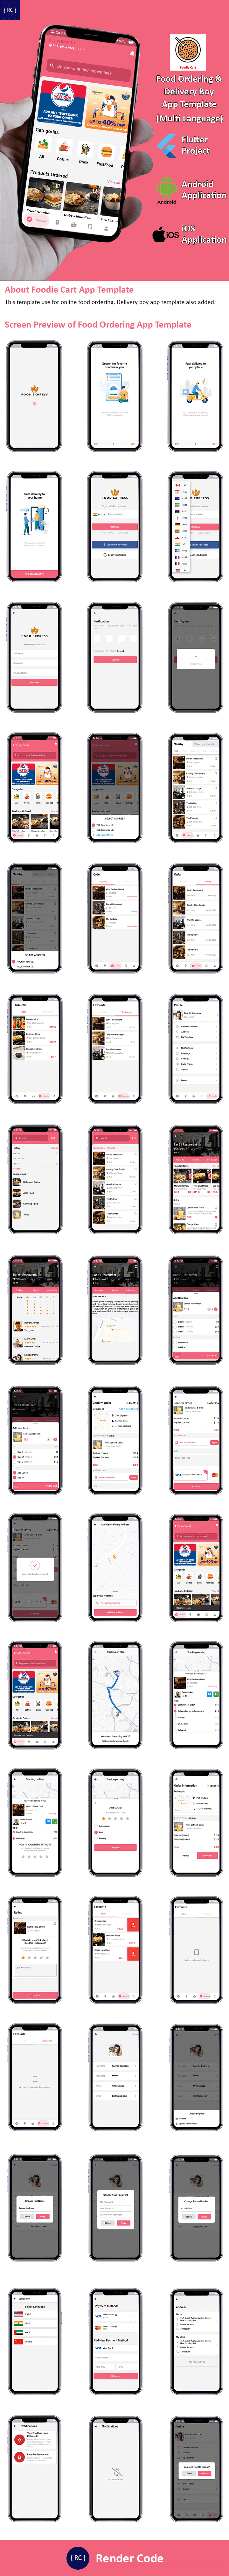 Flutter Food | 2 Apps | Food Ordering App + Delivery Boy App Template in Flutter | Multi Language - 5